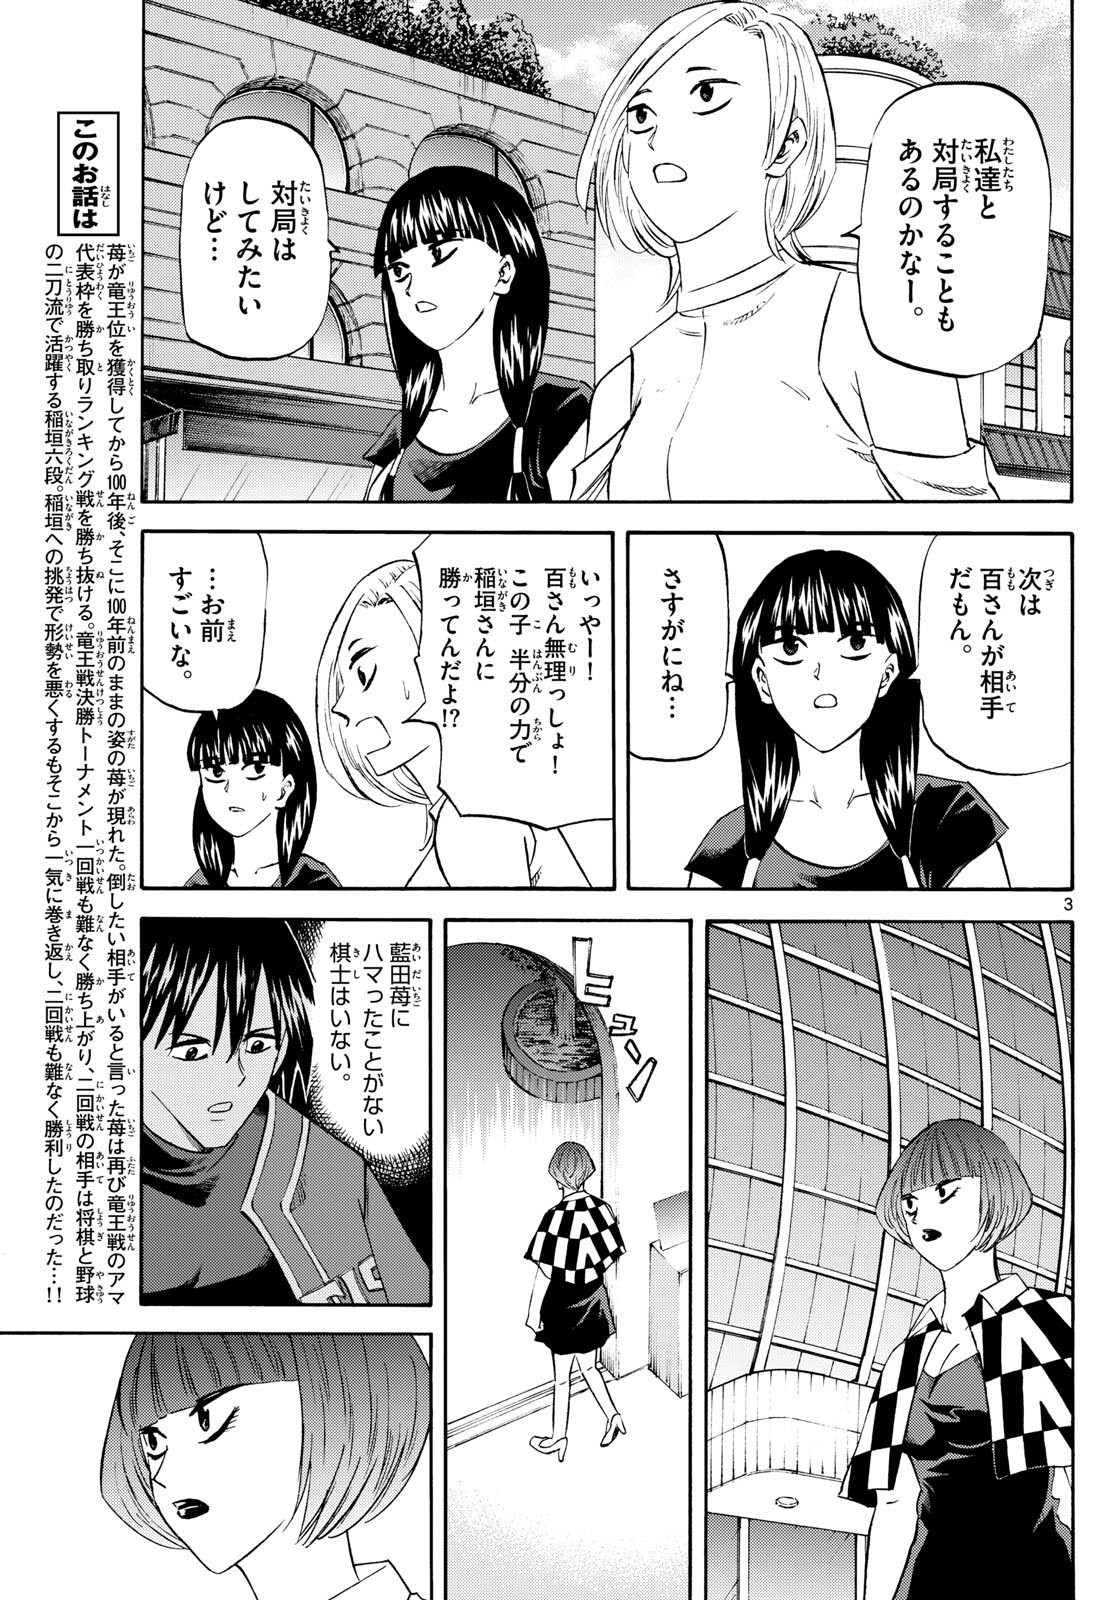 Ryu-to-Ichigo - Chapter 199 - Page 3